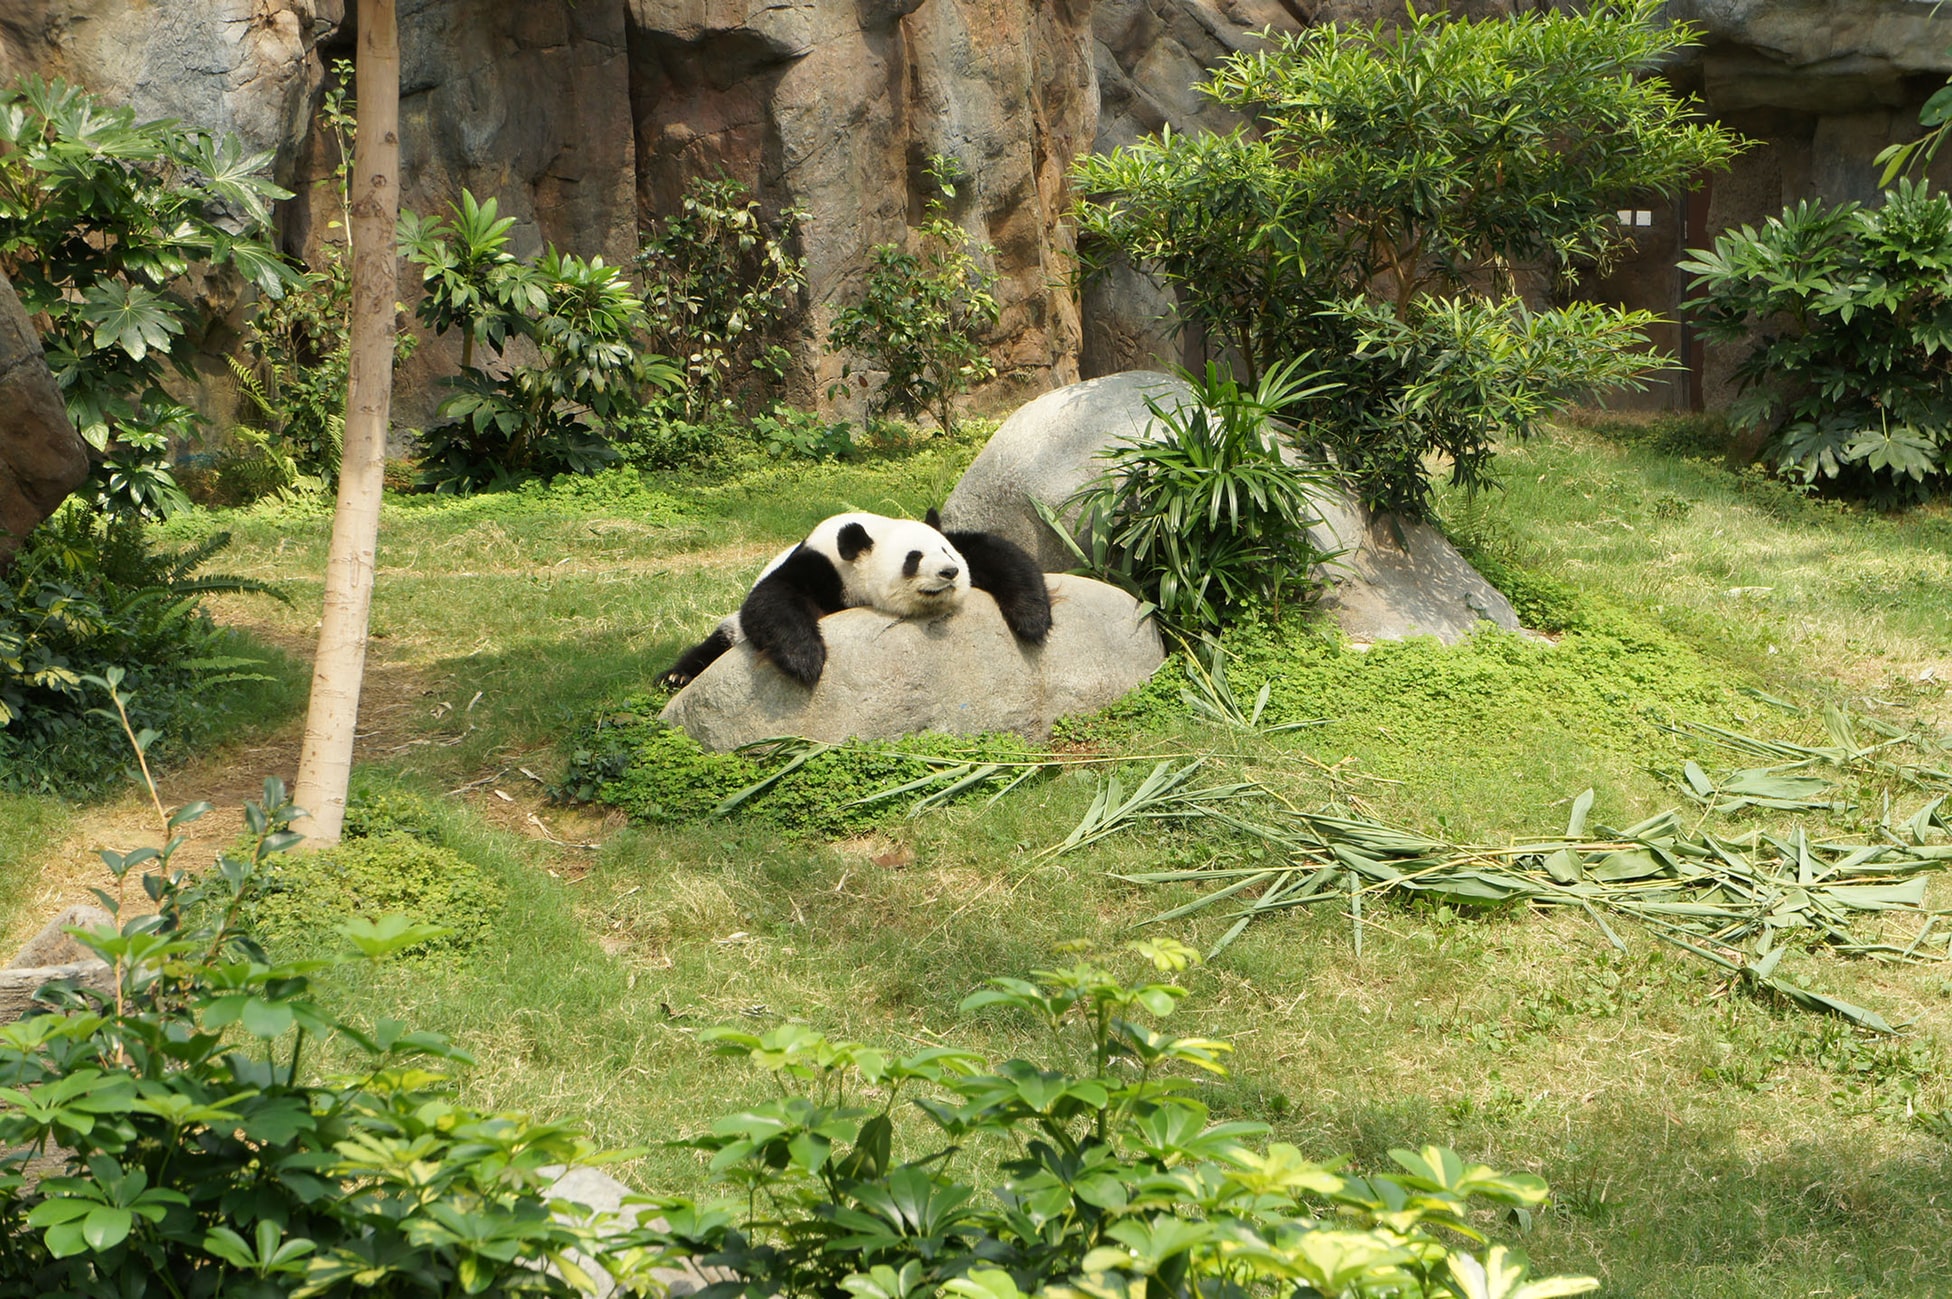 panda lying on rock in garden